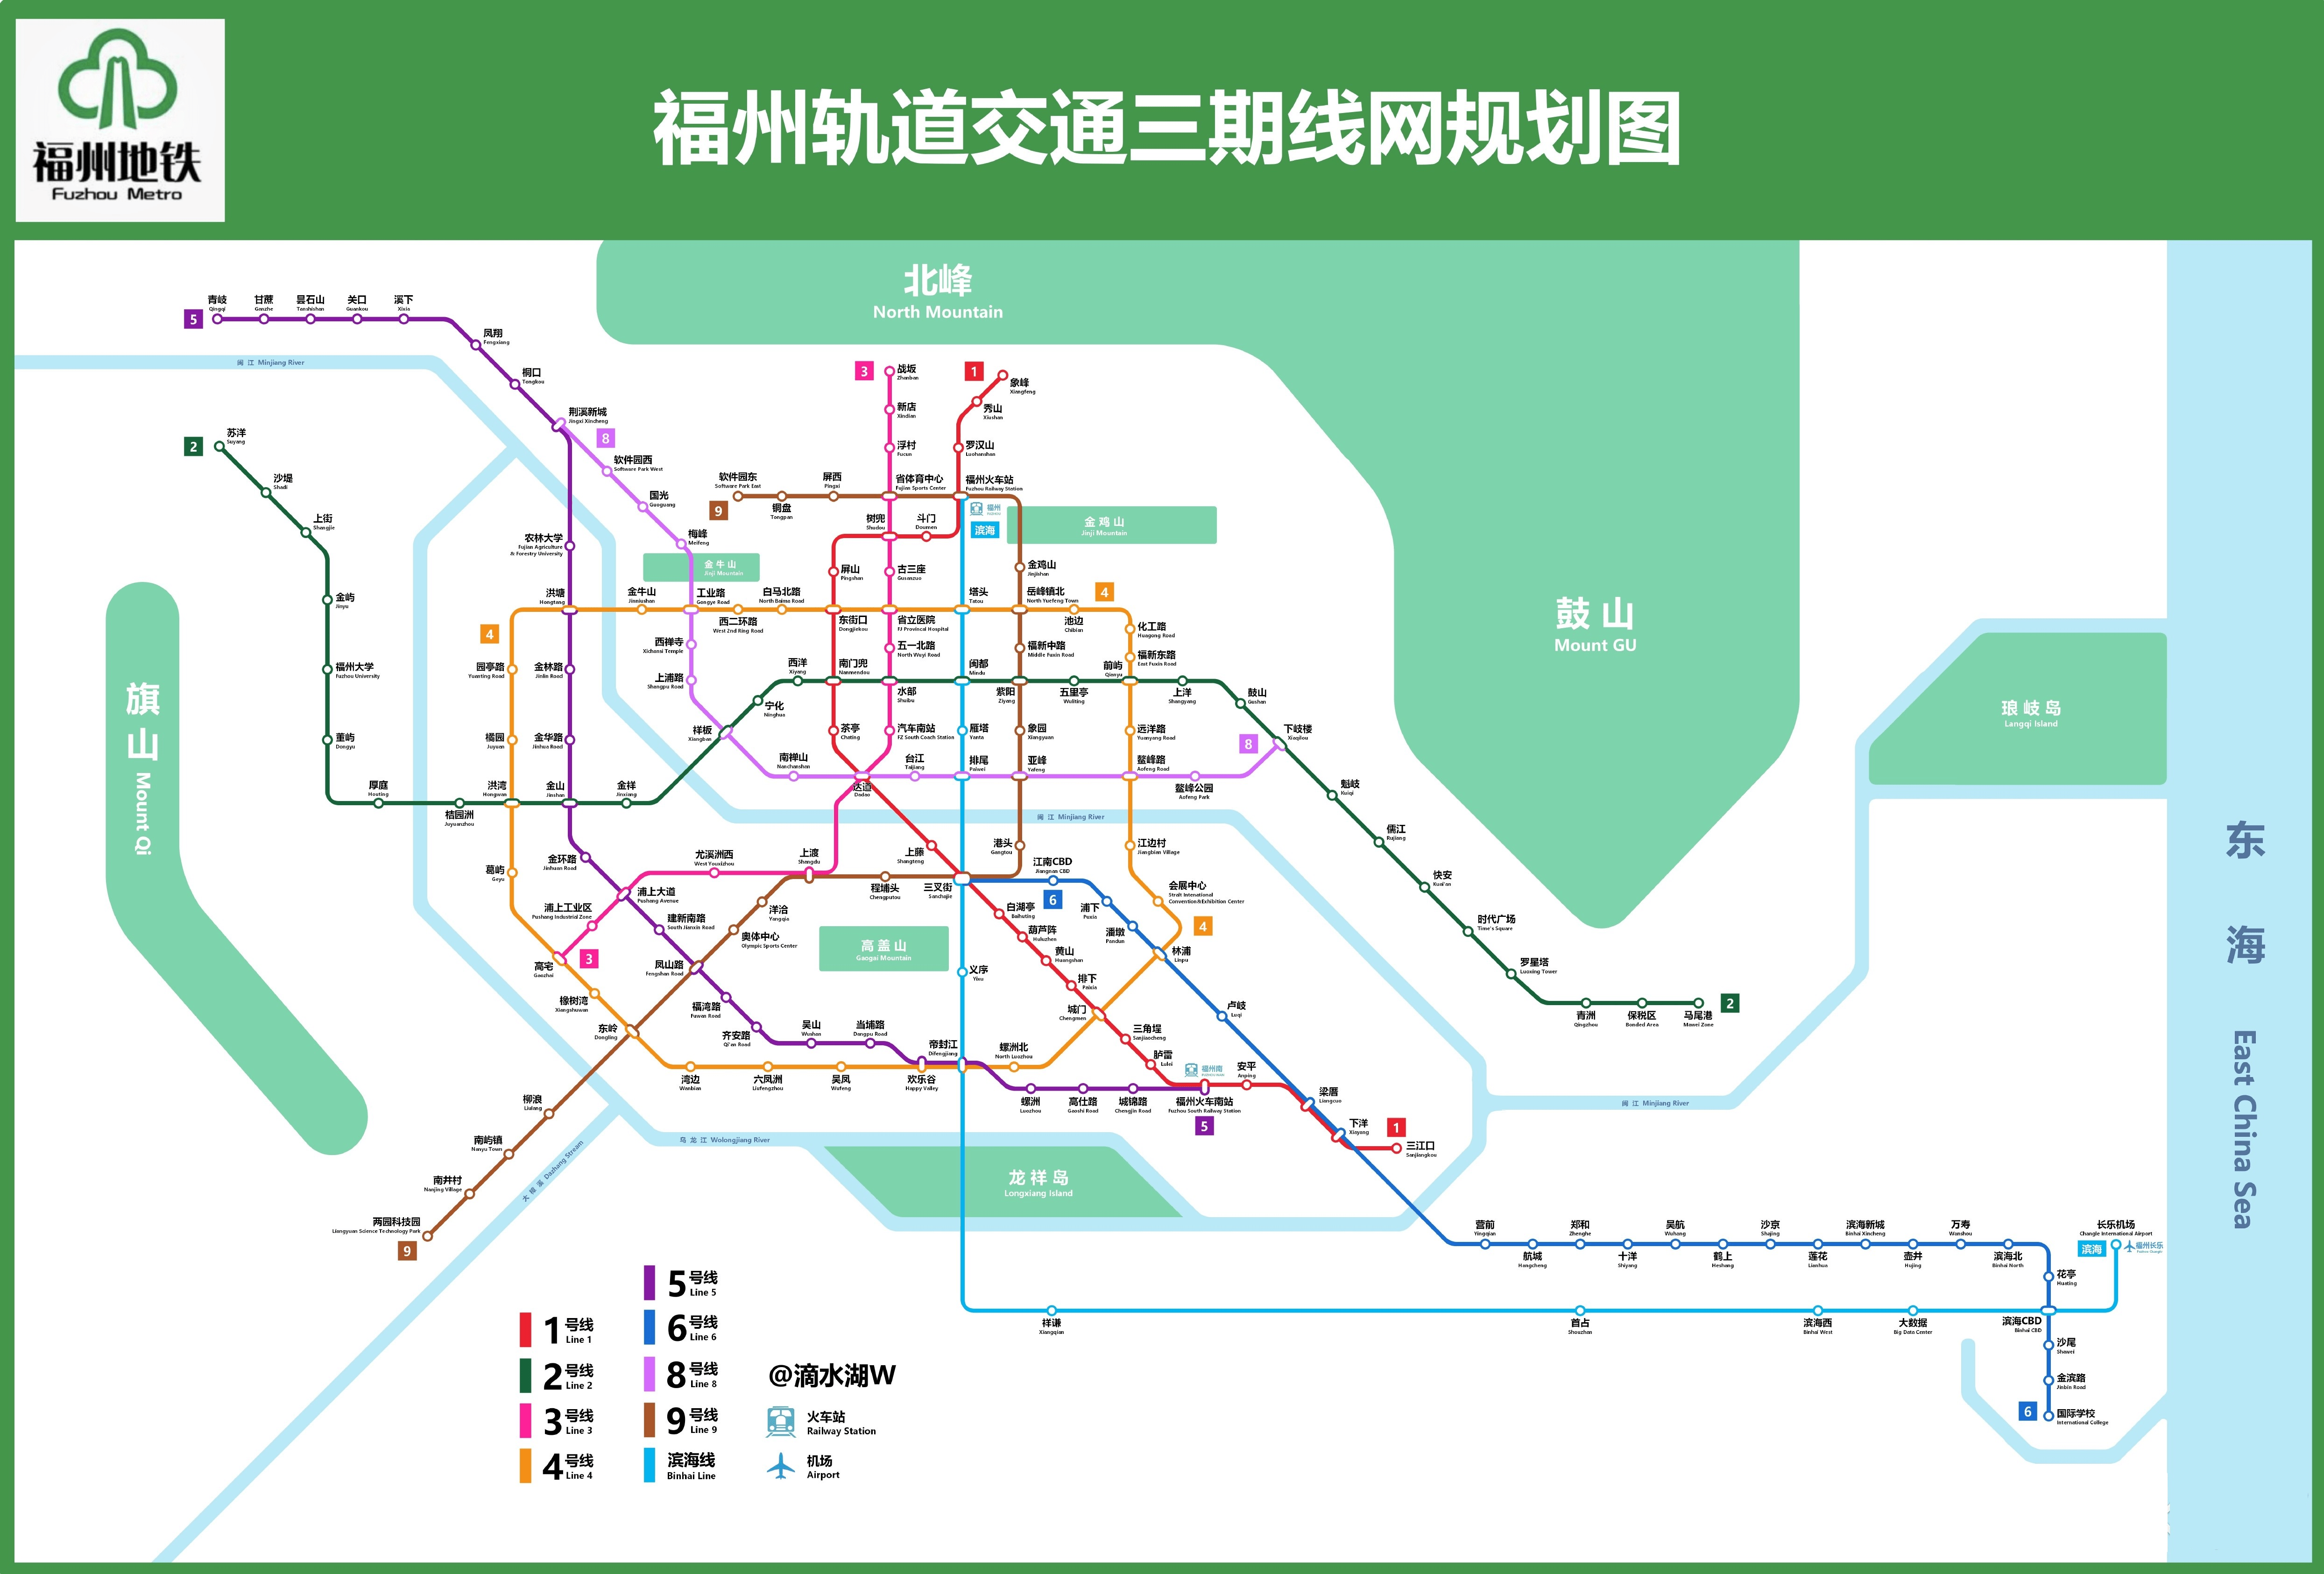 【立体交通】:恒荣九洲·悦城周边已经形成两横两纵双地铁的交通